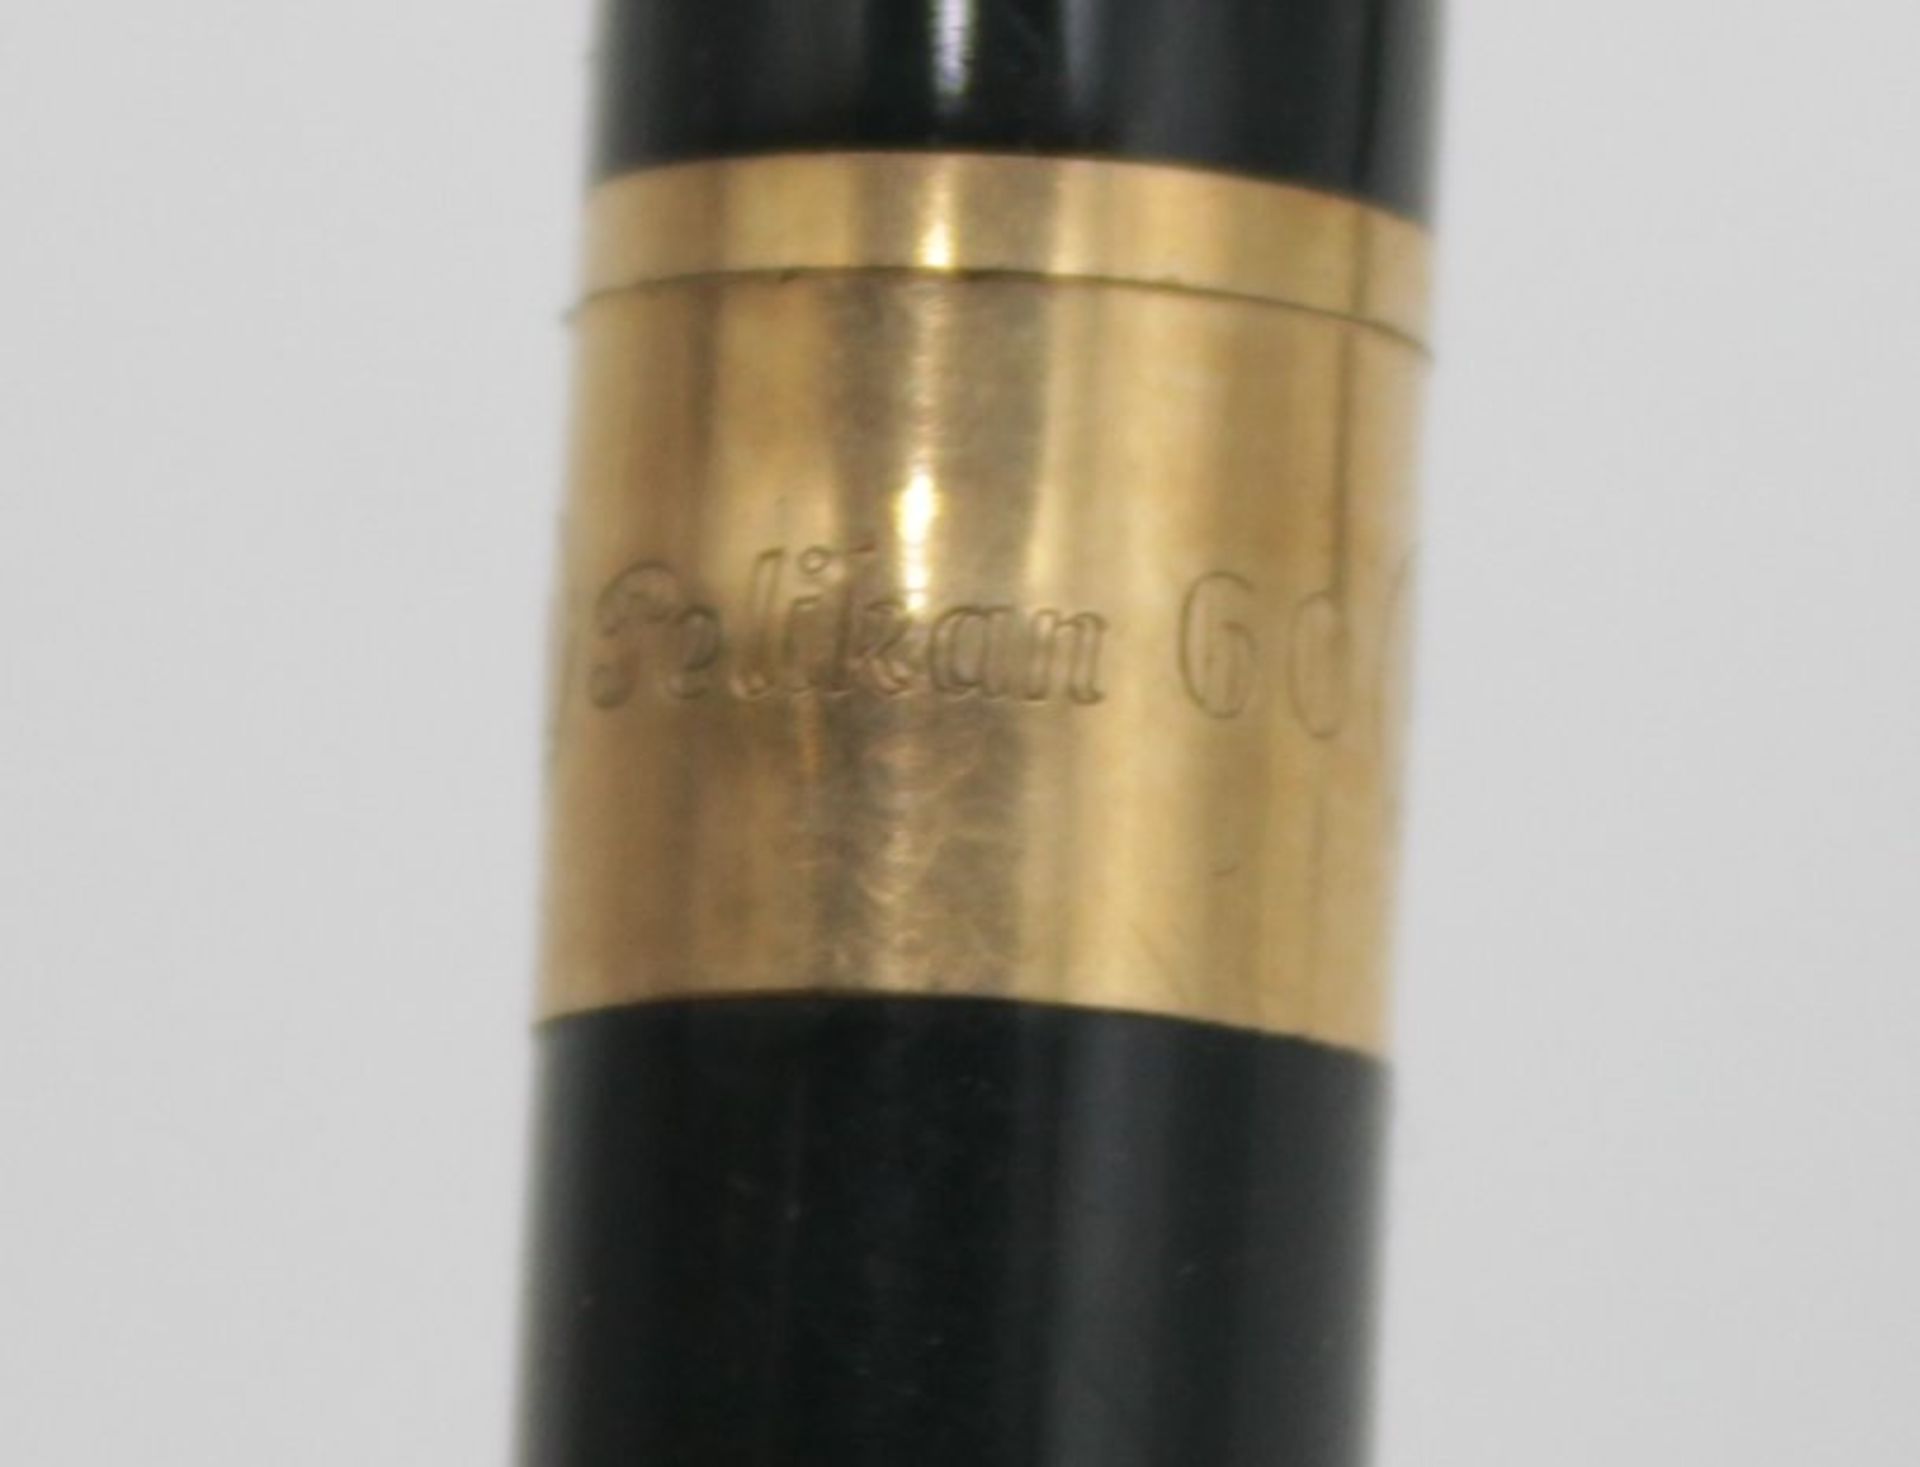 Set, Pelikan, Füller mit 585er Goldfeder u. Druckbleistift, in Etui, Füller mit Namensgravur - Bild 3 aus 7